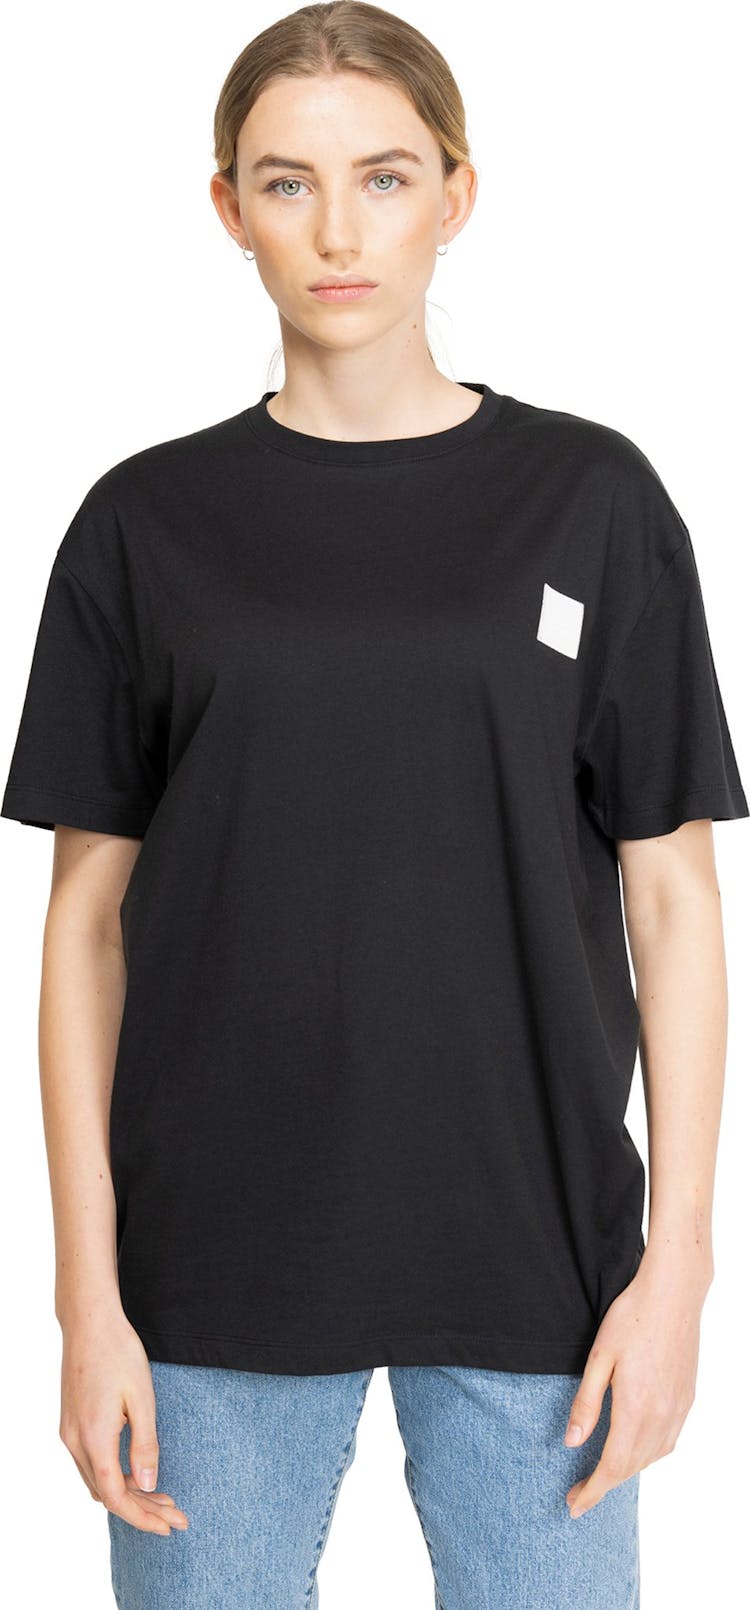 Numéro de l'image de la galerie de produits 3 pour le produit T-shirt à patch - Femme